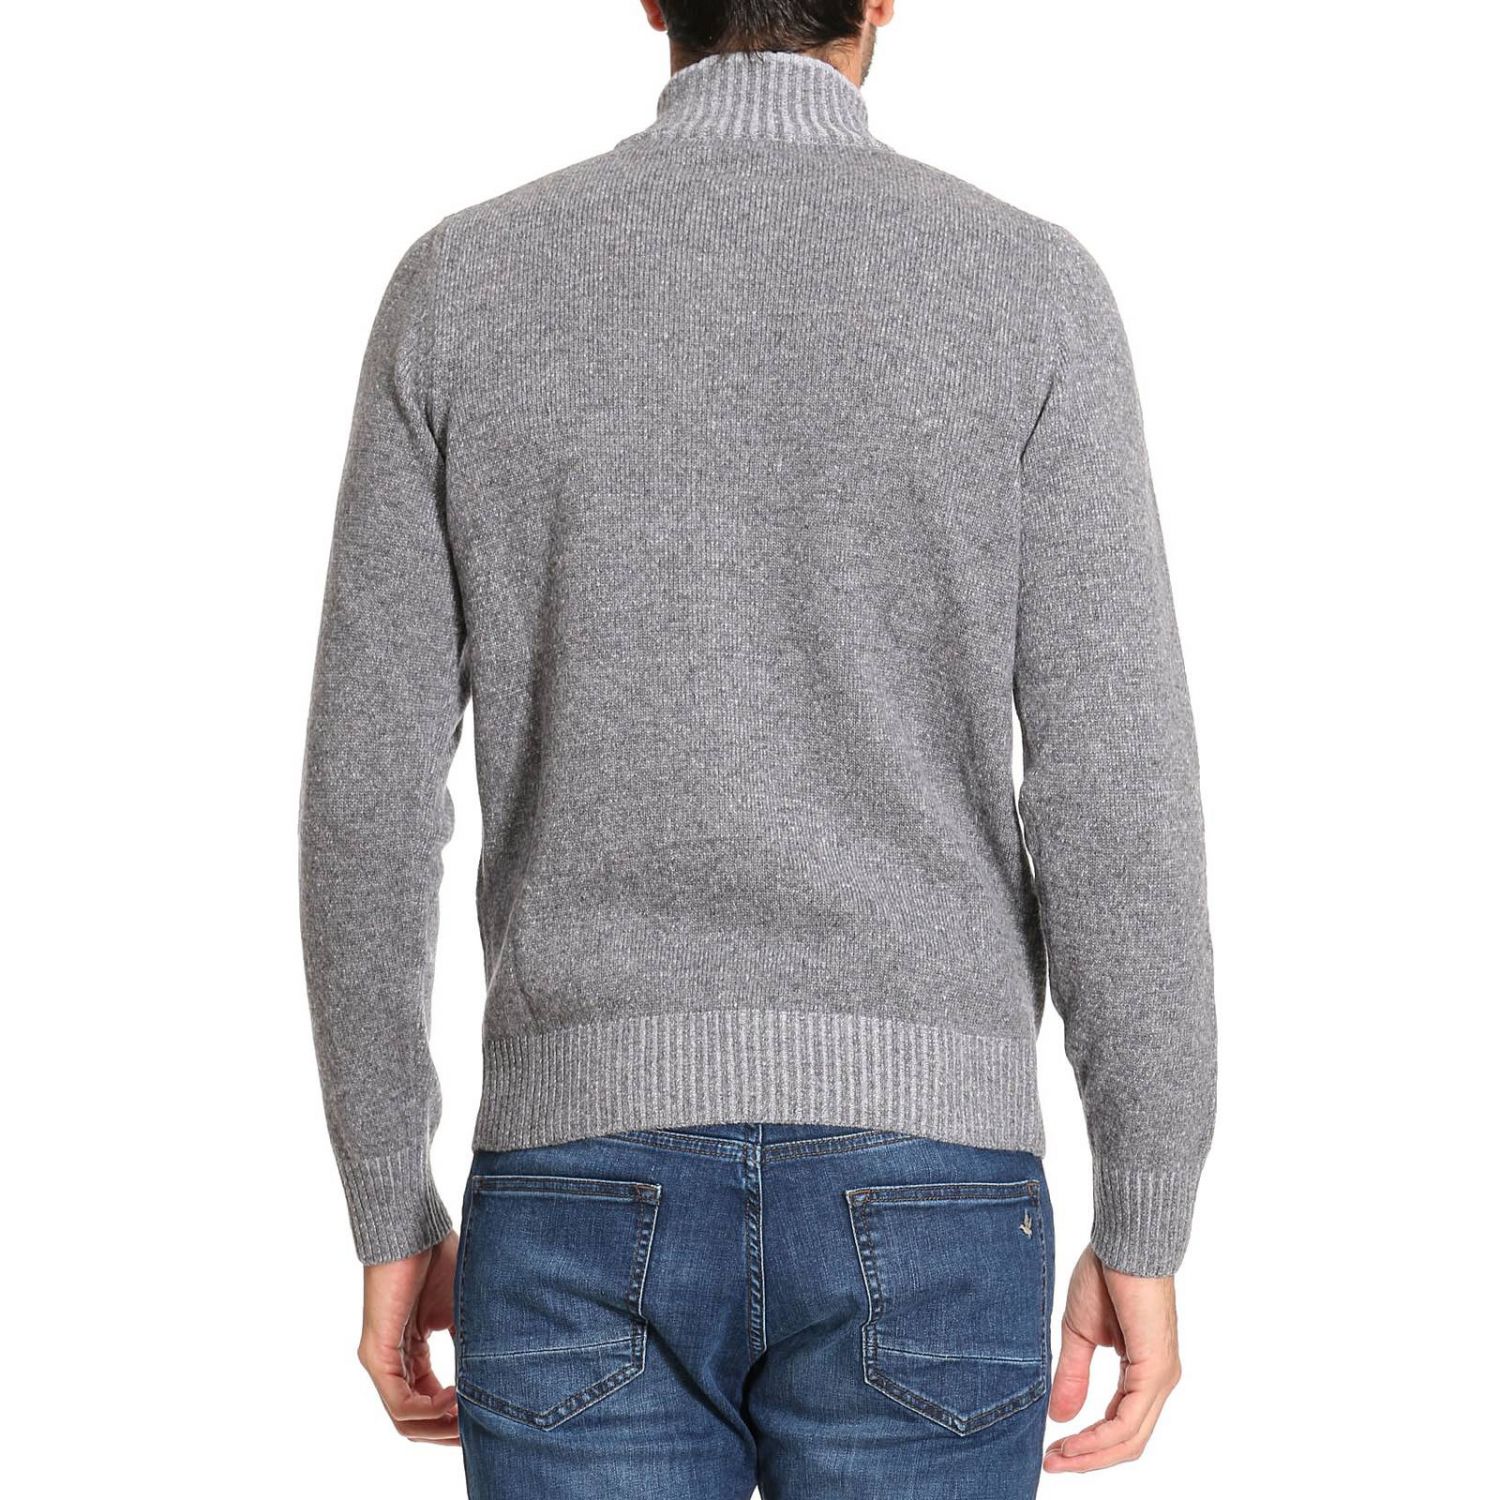 Brooksfield Outlet: Sweater men | Cardigan Brooksfield Men Grey ...